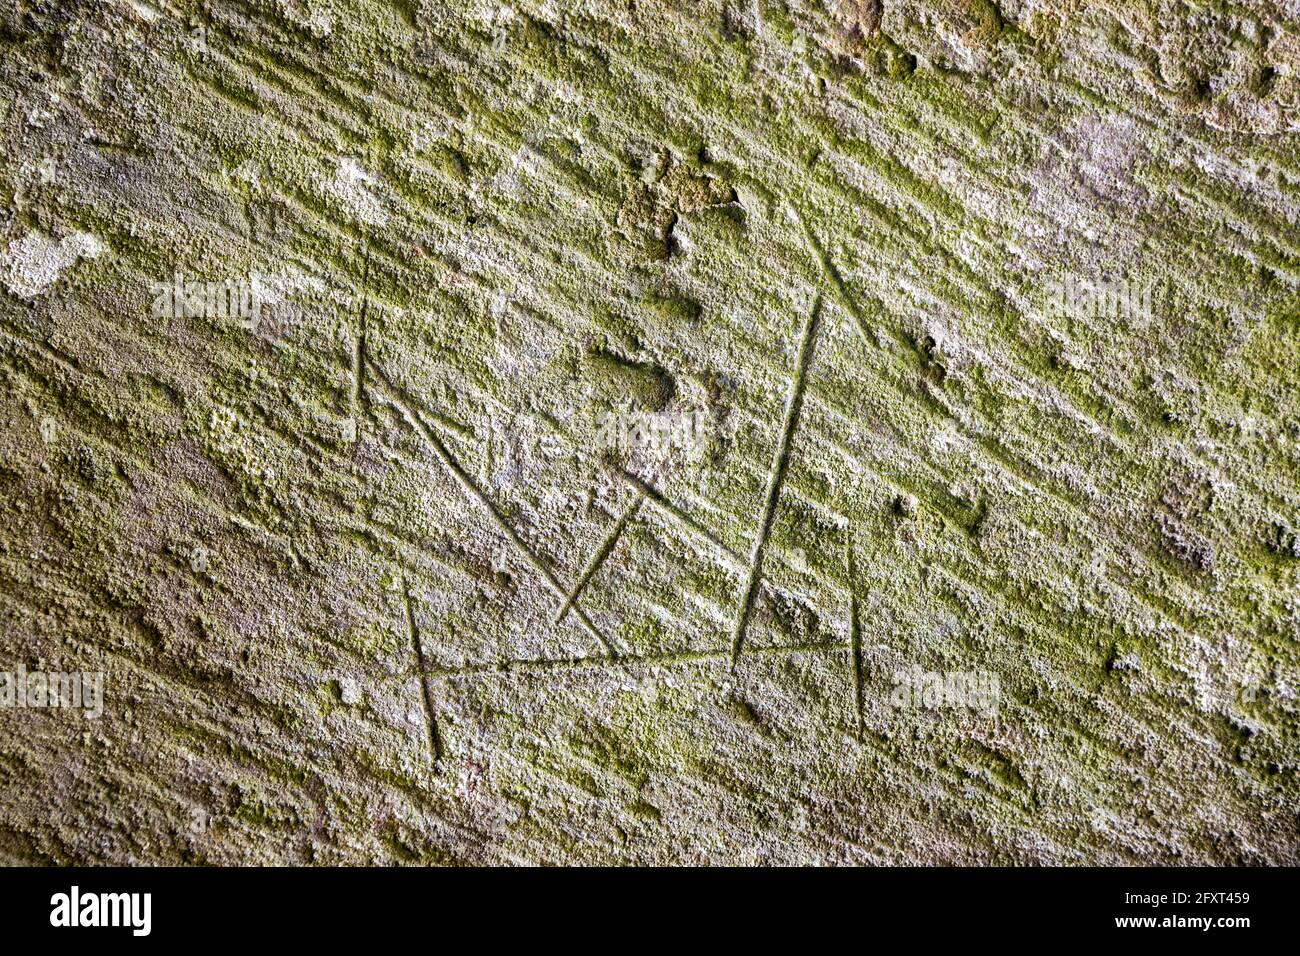 Marque de Mason en pierre enregistrant l'indication de guilde pour assurer le paiement, Lanercost Priory, Cumbria, Angleterre, Royaume-Uni Banque D'Images